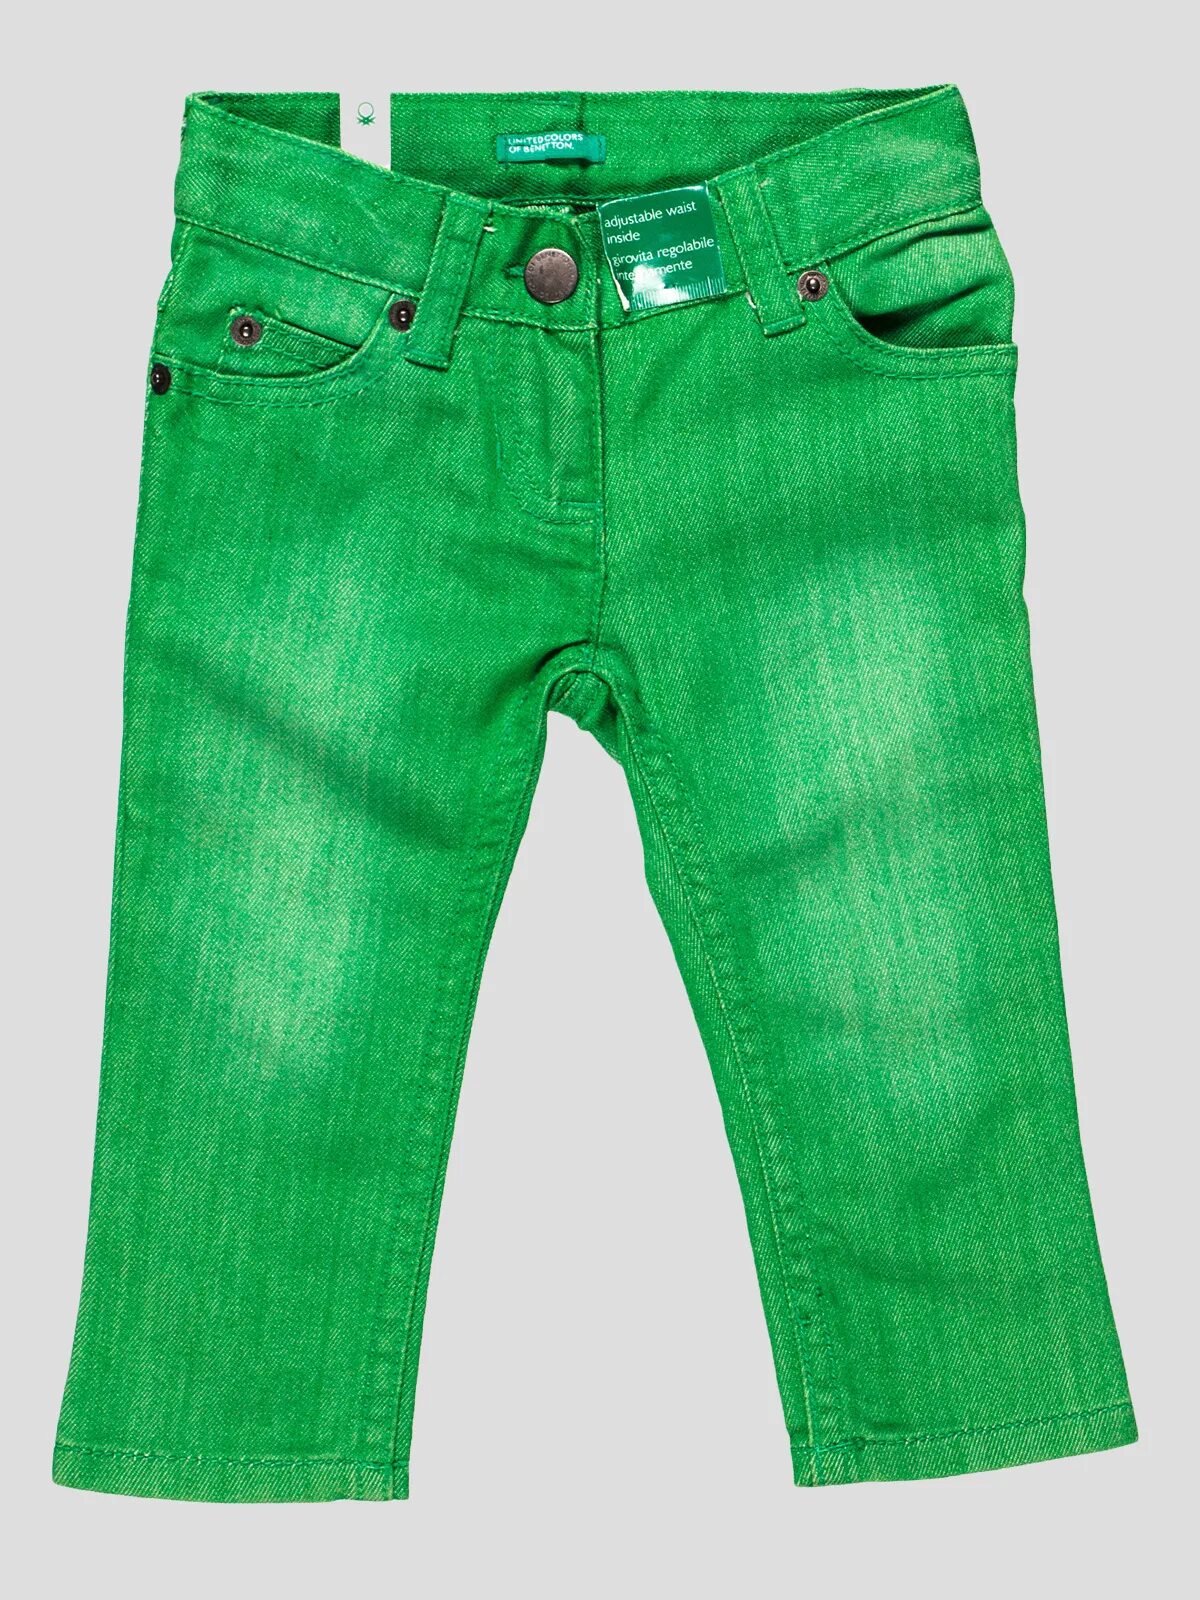 Джинса зеленая купить. Джинсы Бенеттон зеленые. Салатовые джинсы. Зелёные джинсы женские. Зеленые джинсы мужские.